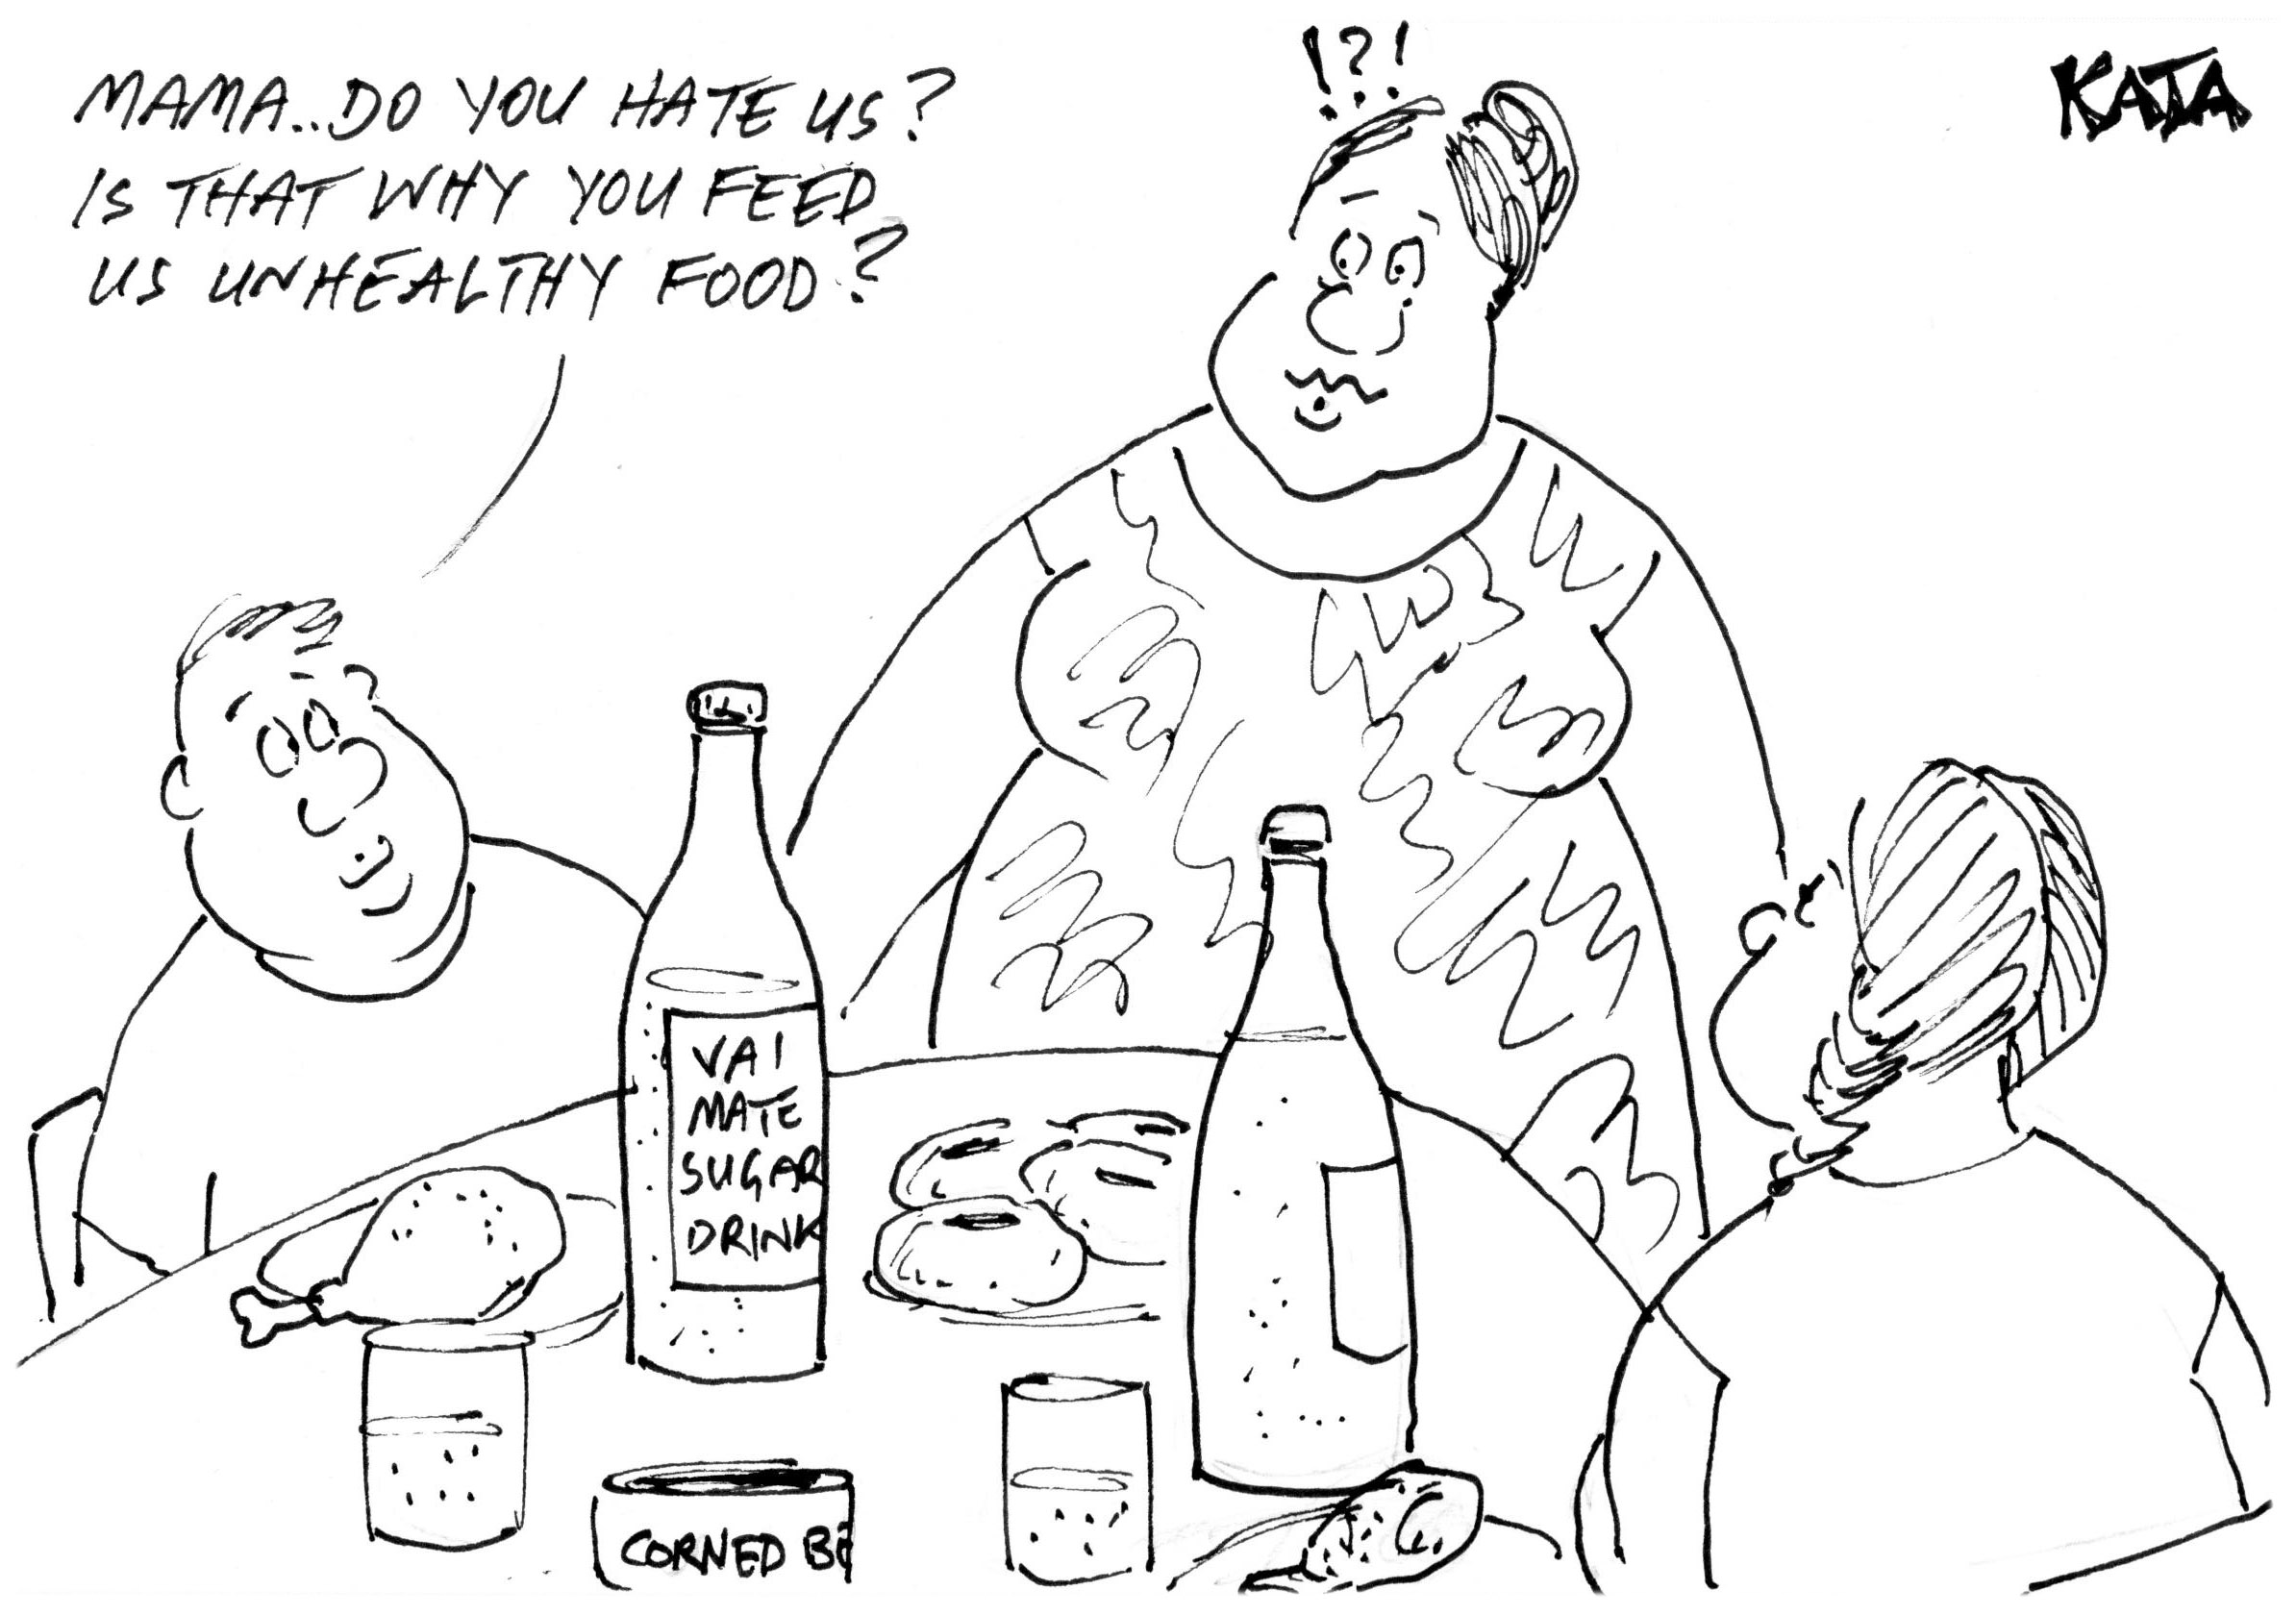 Kata: Unhealthy food